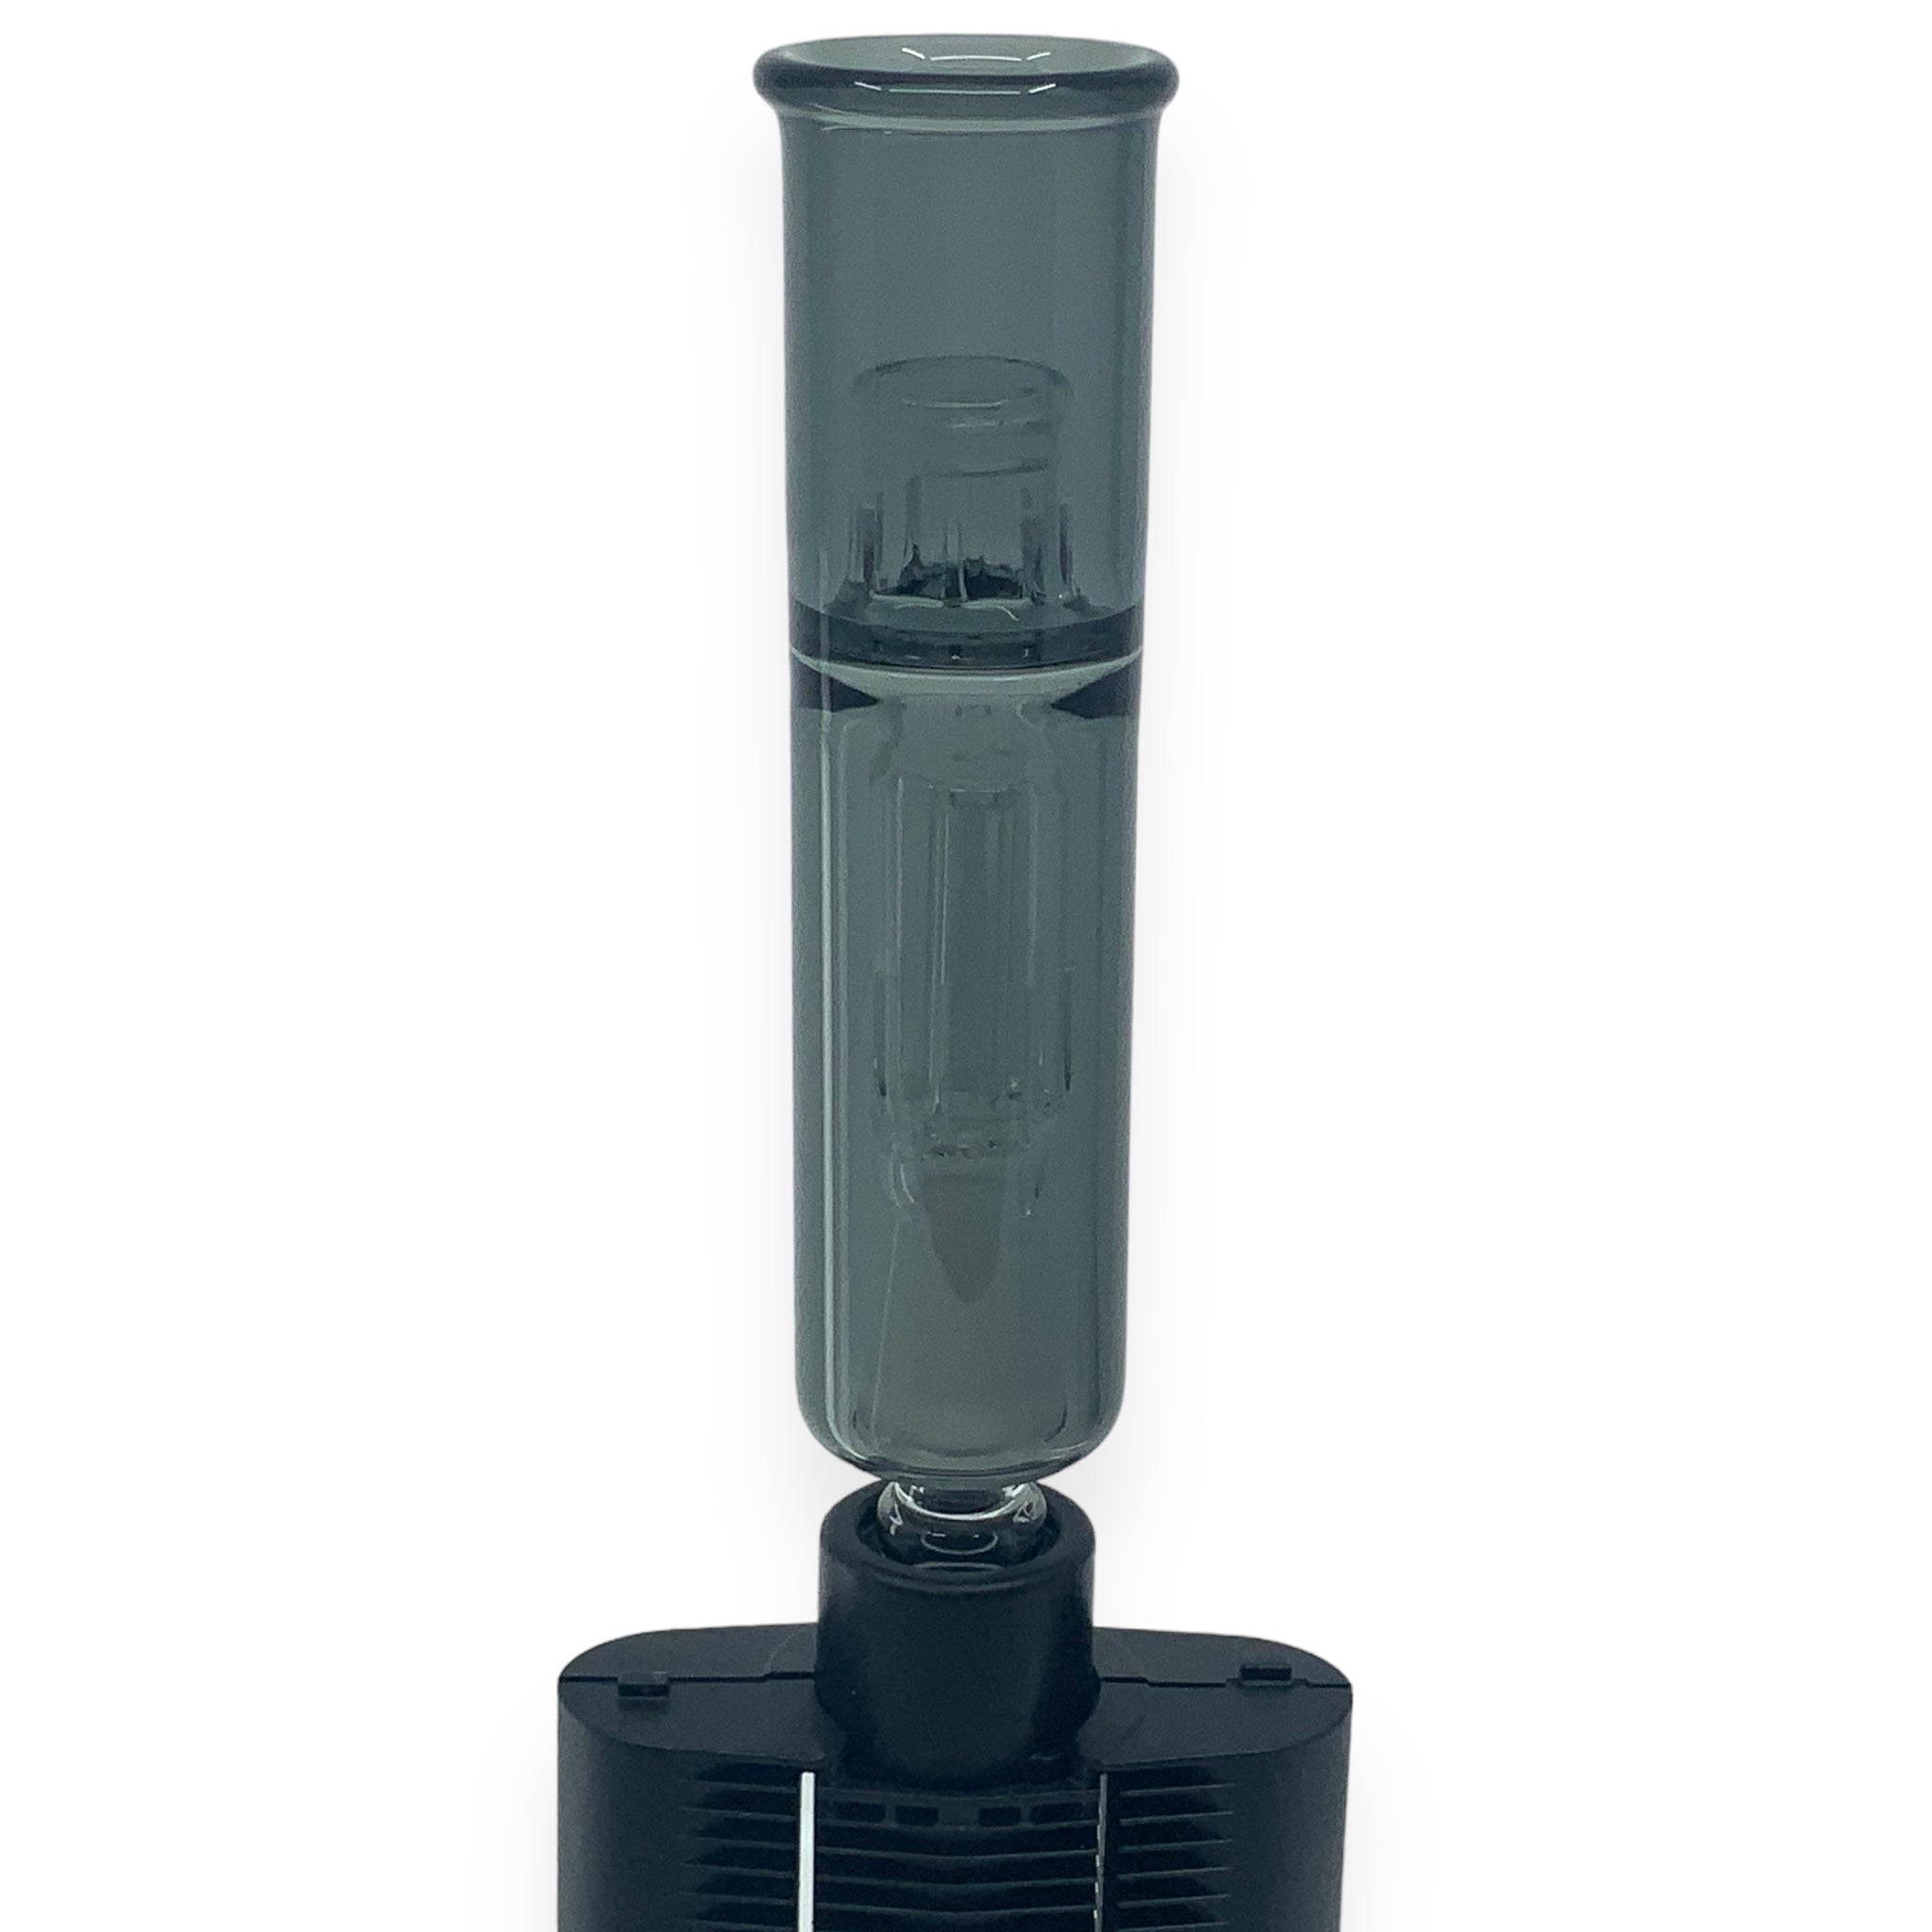 Wasserfilter / Bubbler passend für Mighty/Mighty+/Crafty+ Vaporizer Schwarz / Black aufgesetzt